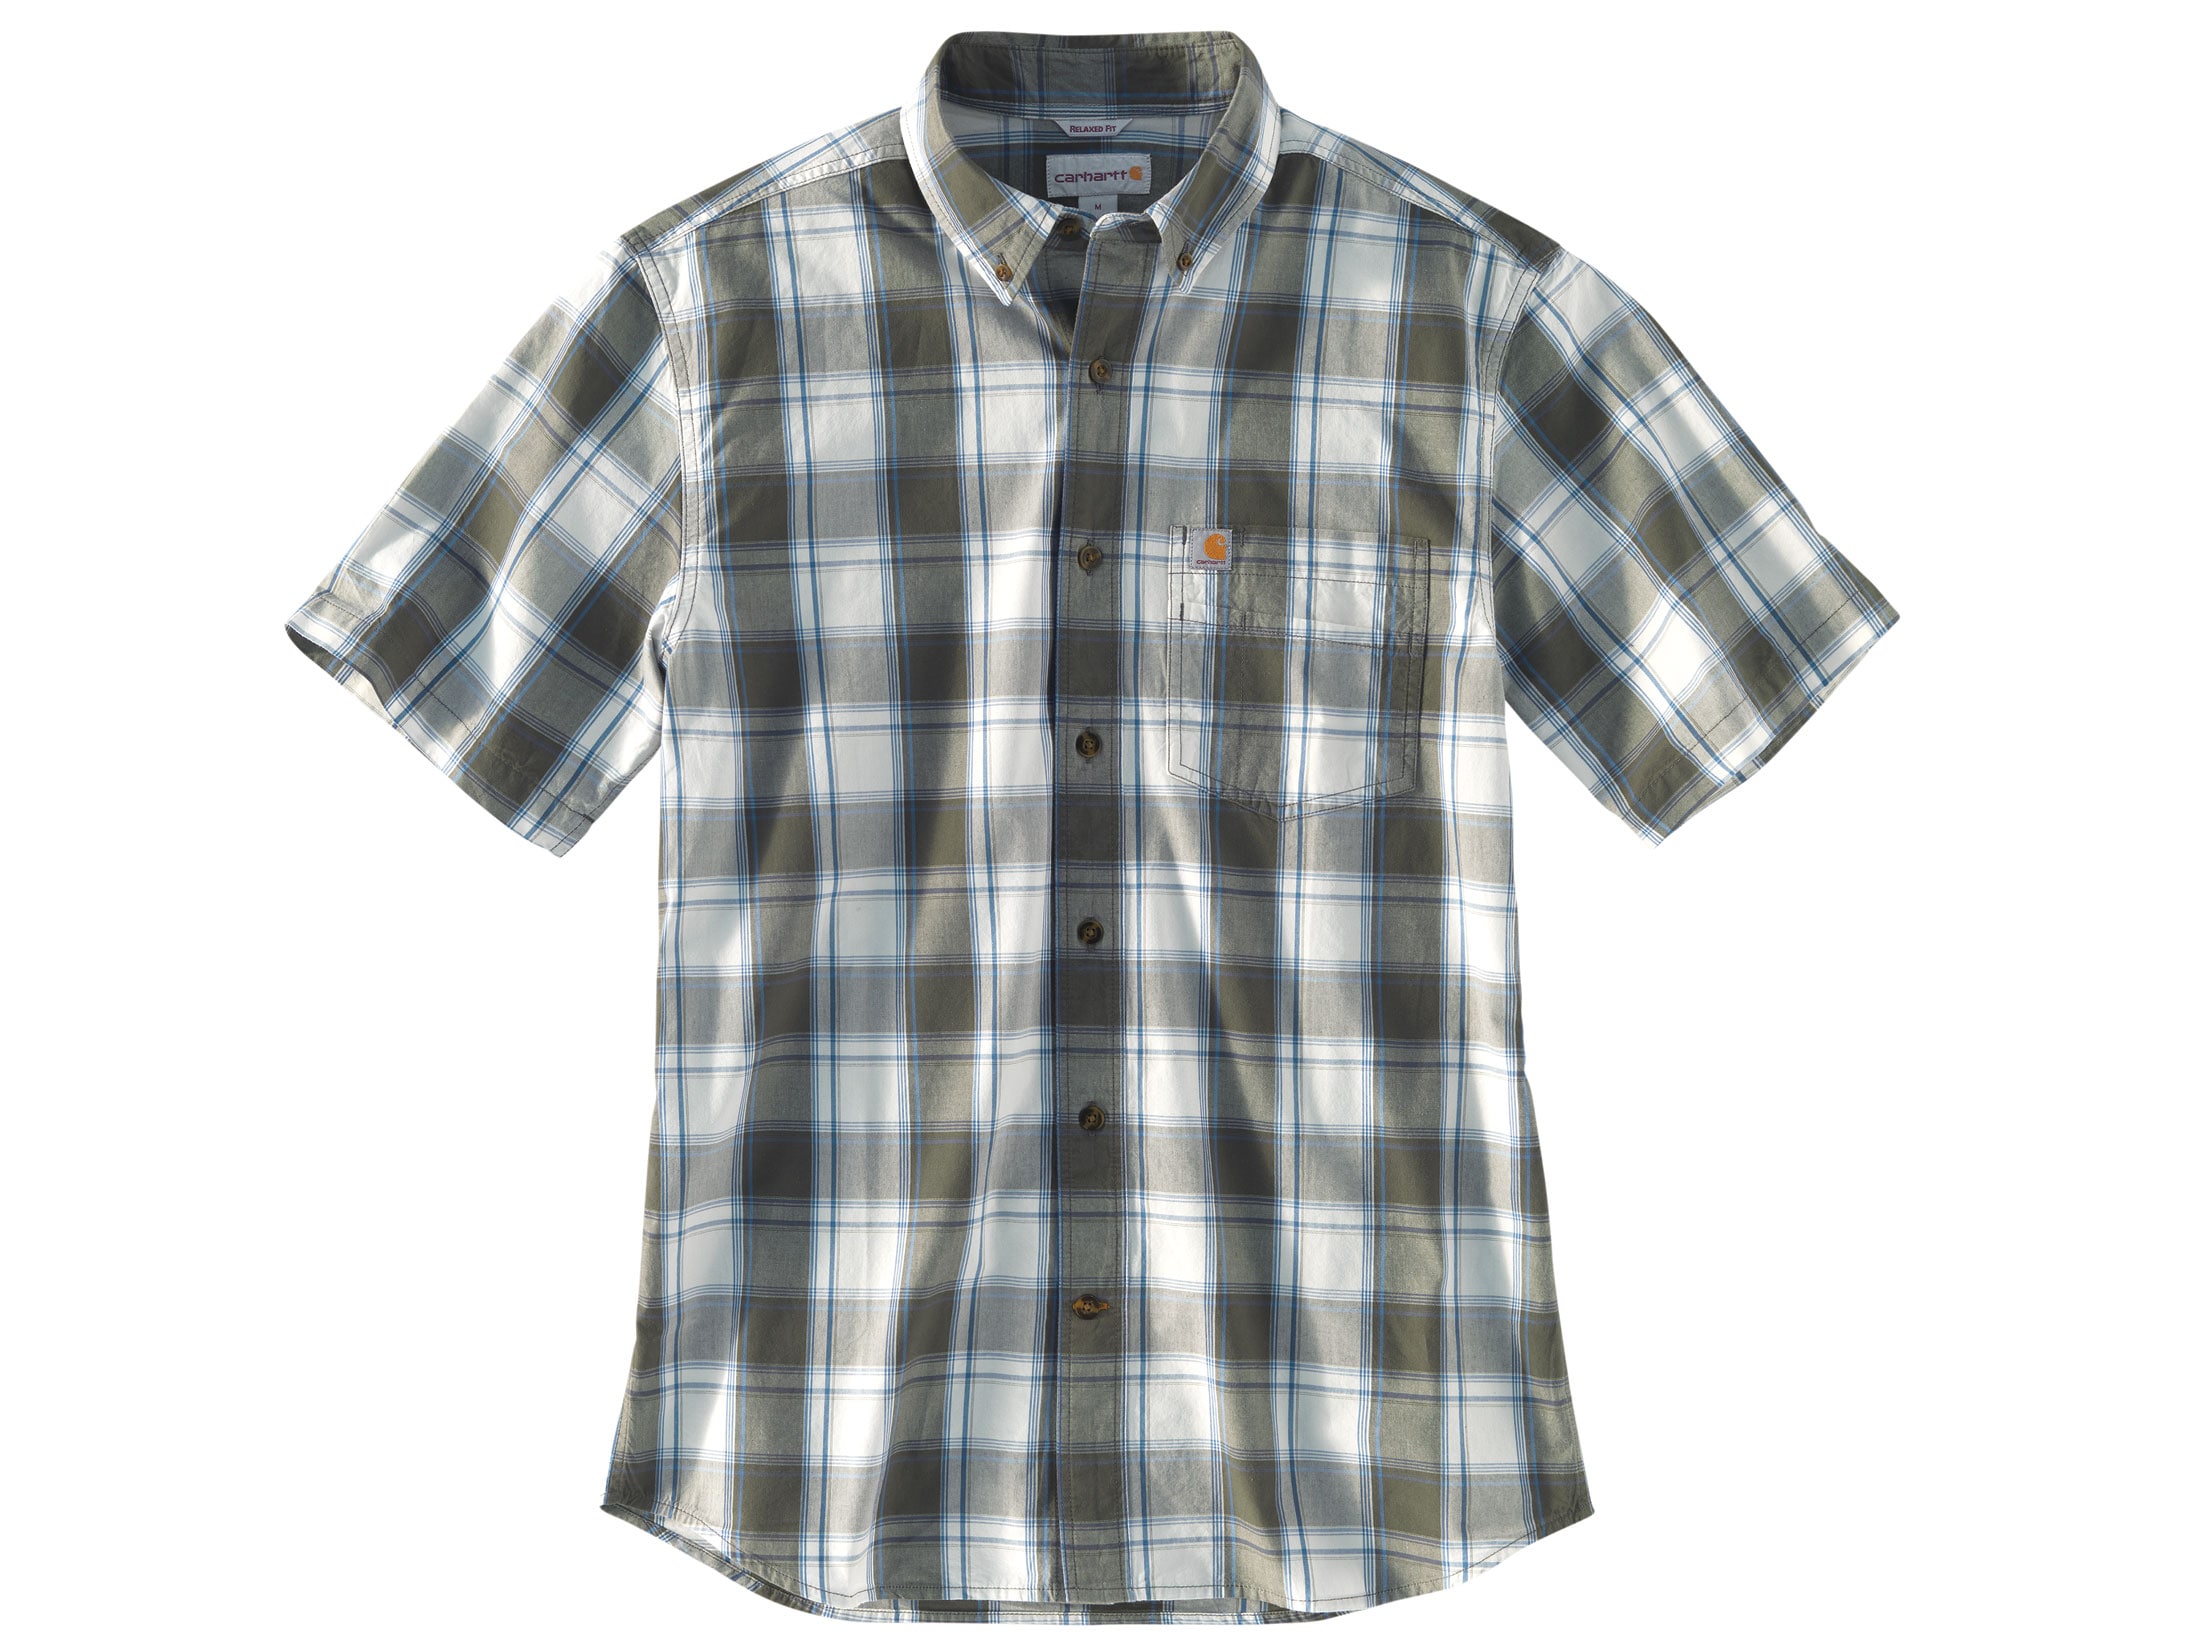 Carhartt Men's Essential Plaid Button-Up Shirt Short Sleeve Cotton